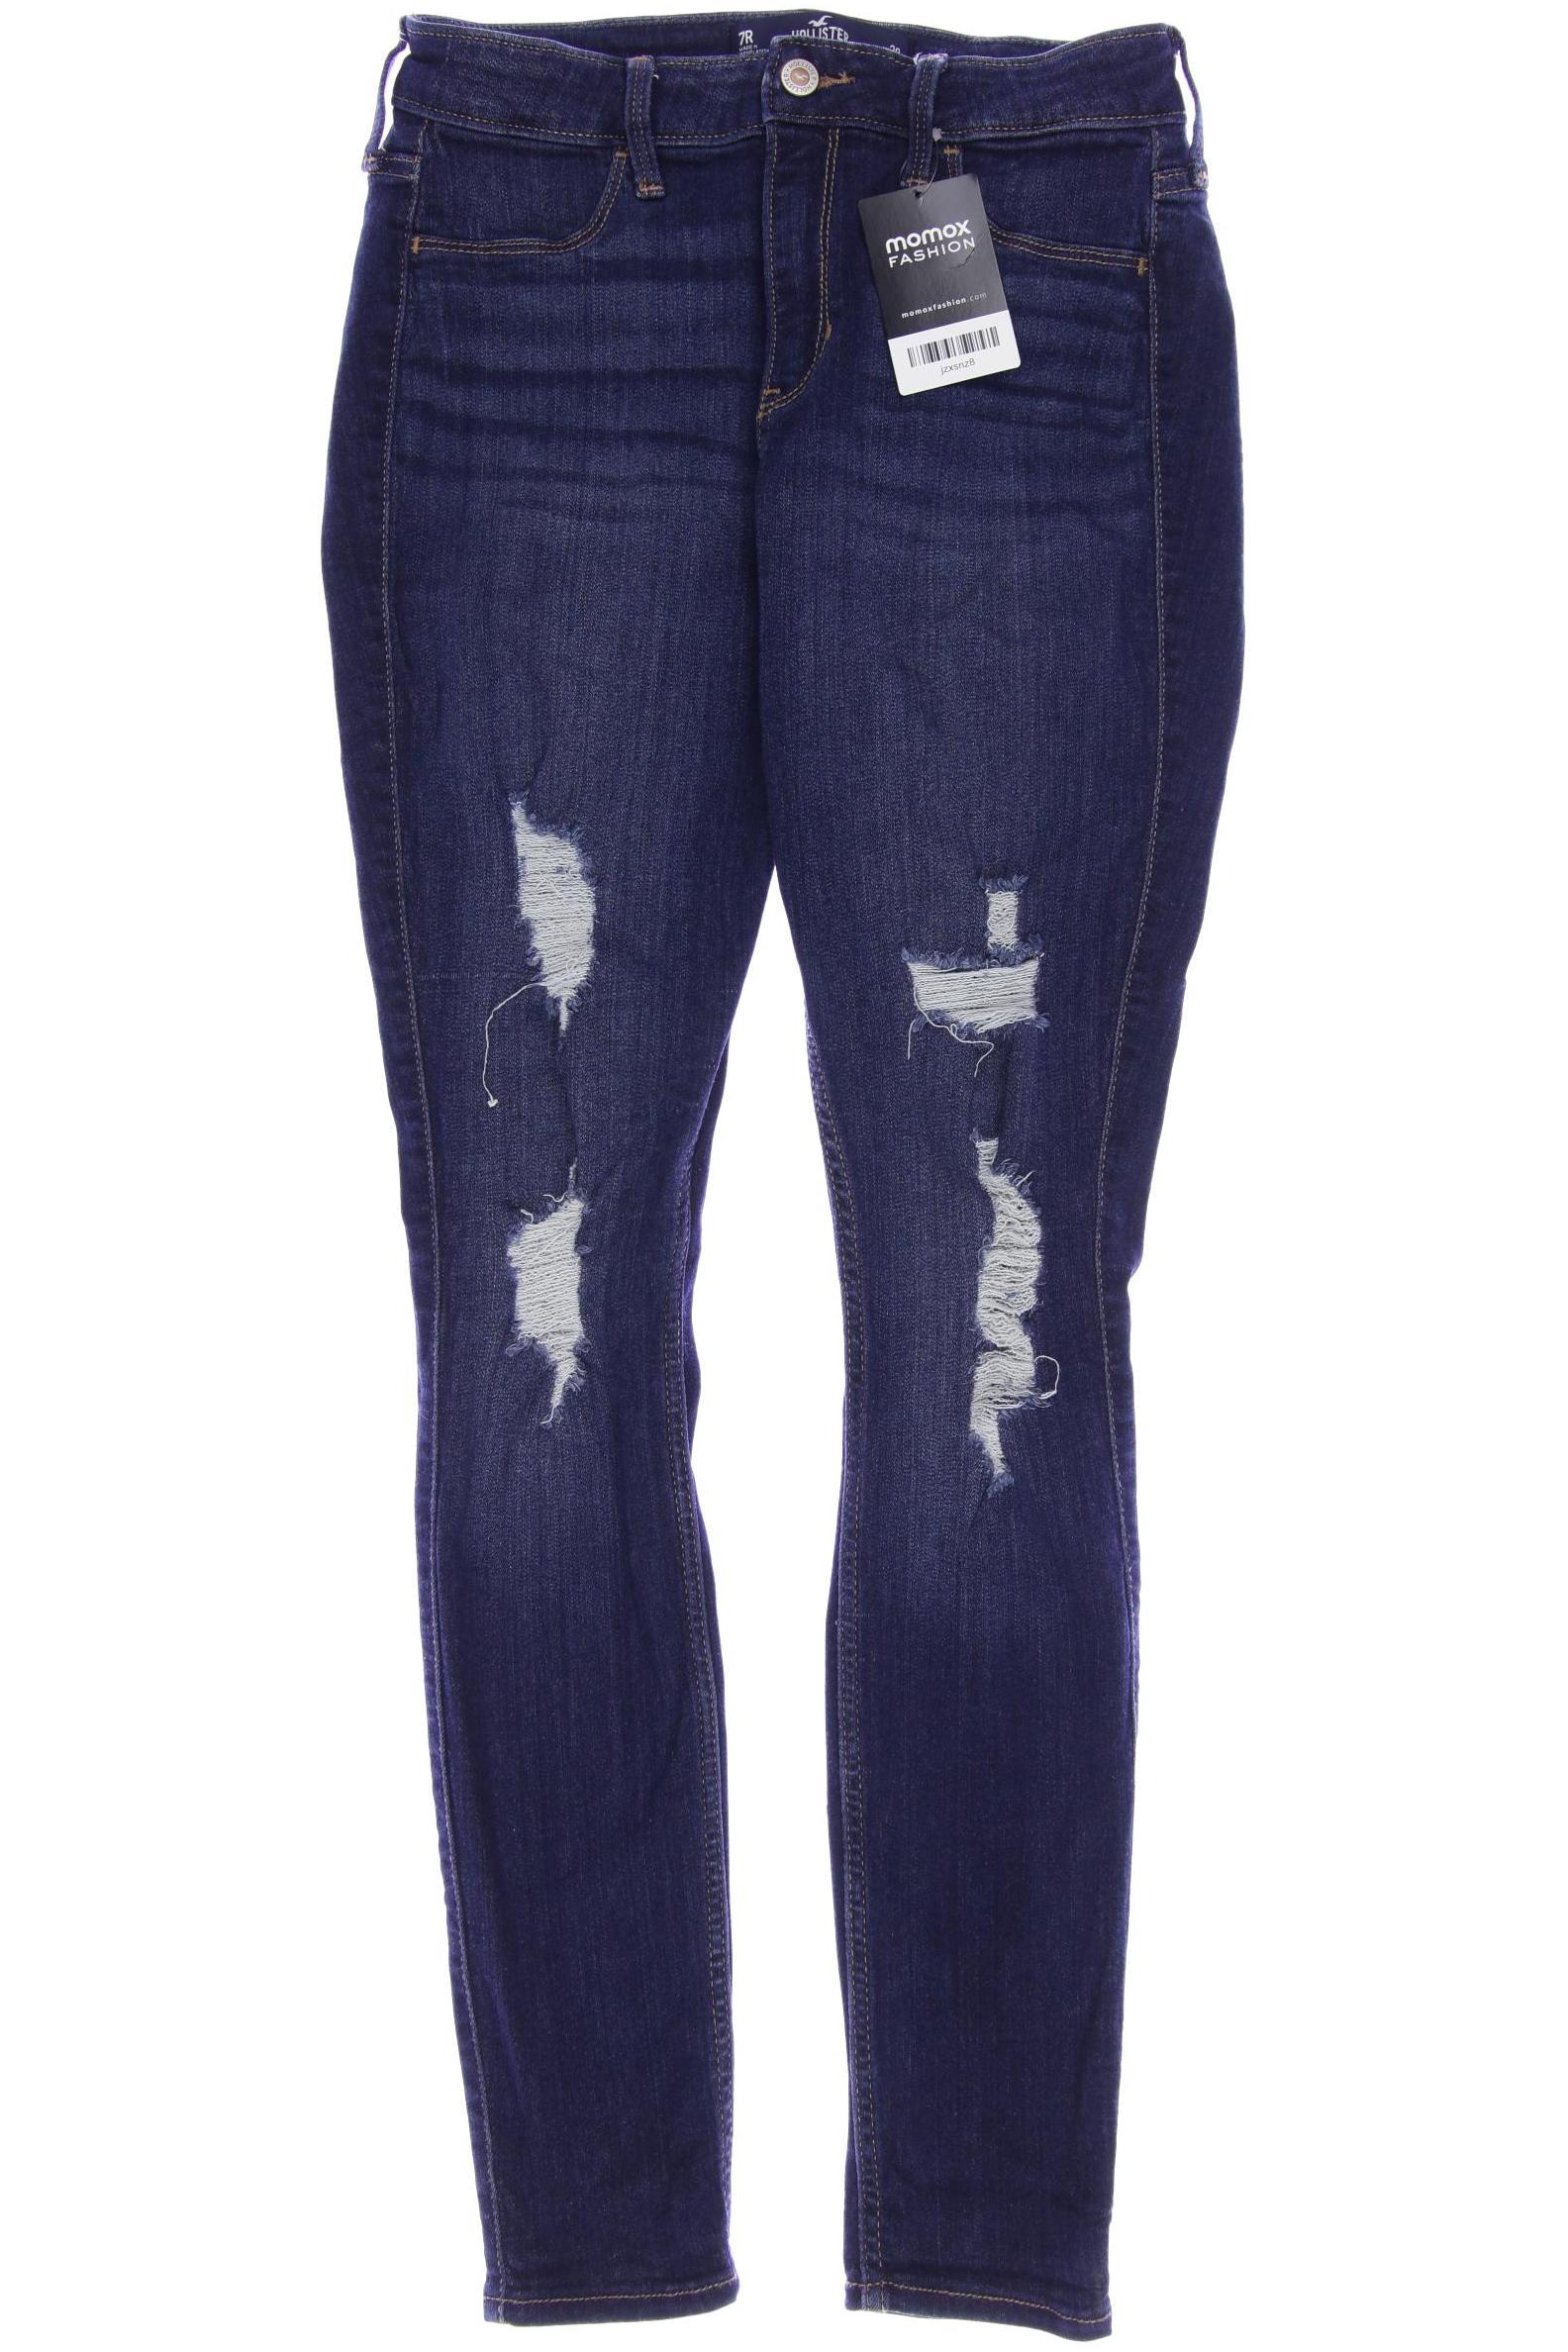 Hollister Damen Jeans, marineblau, Gr. 38 von Hollister